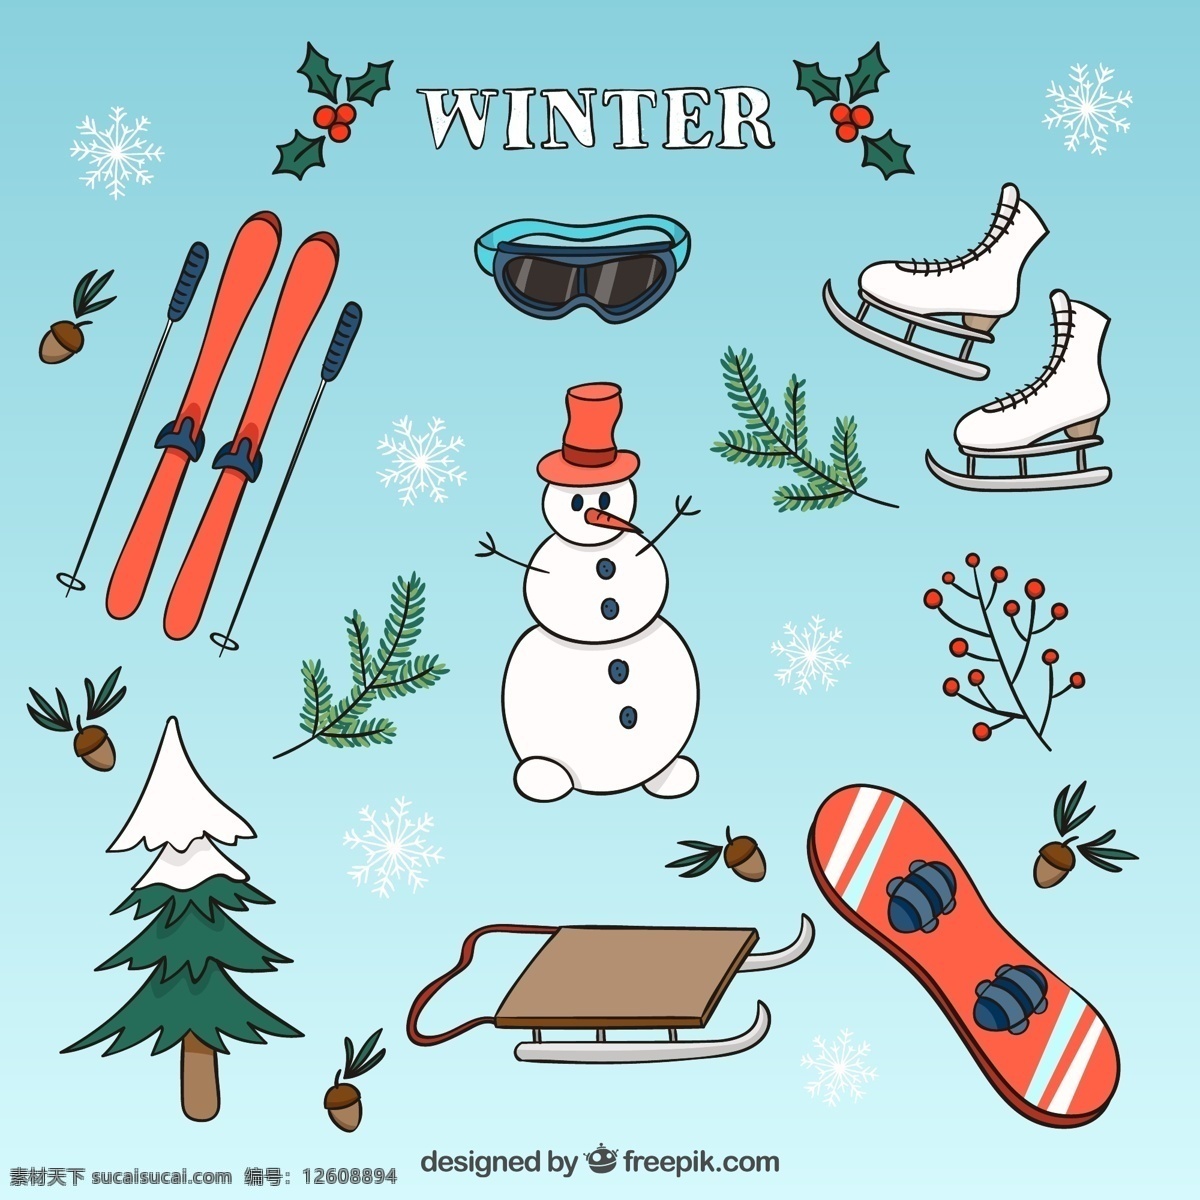 手绘 冬季 元素 集合 圣诞树 一方面 雪 冬天 手画 雪人 冰 画画 滑雪 滑冰 手工绘图 绘制 圣诞元素 粗略 收集 青色 天蓝色